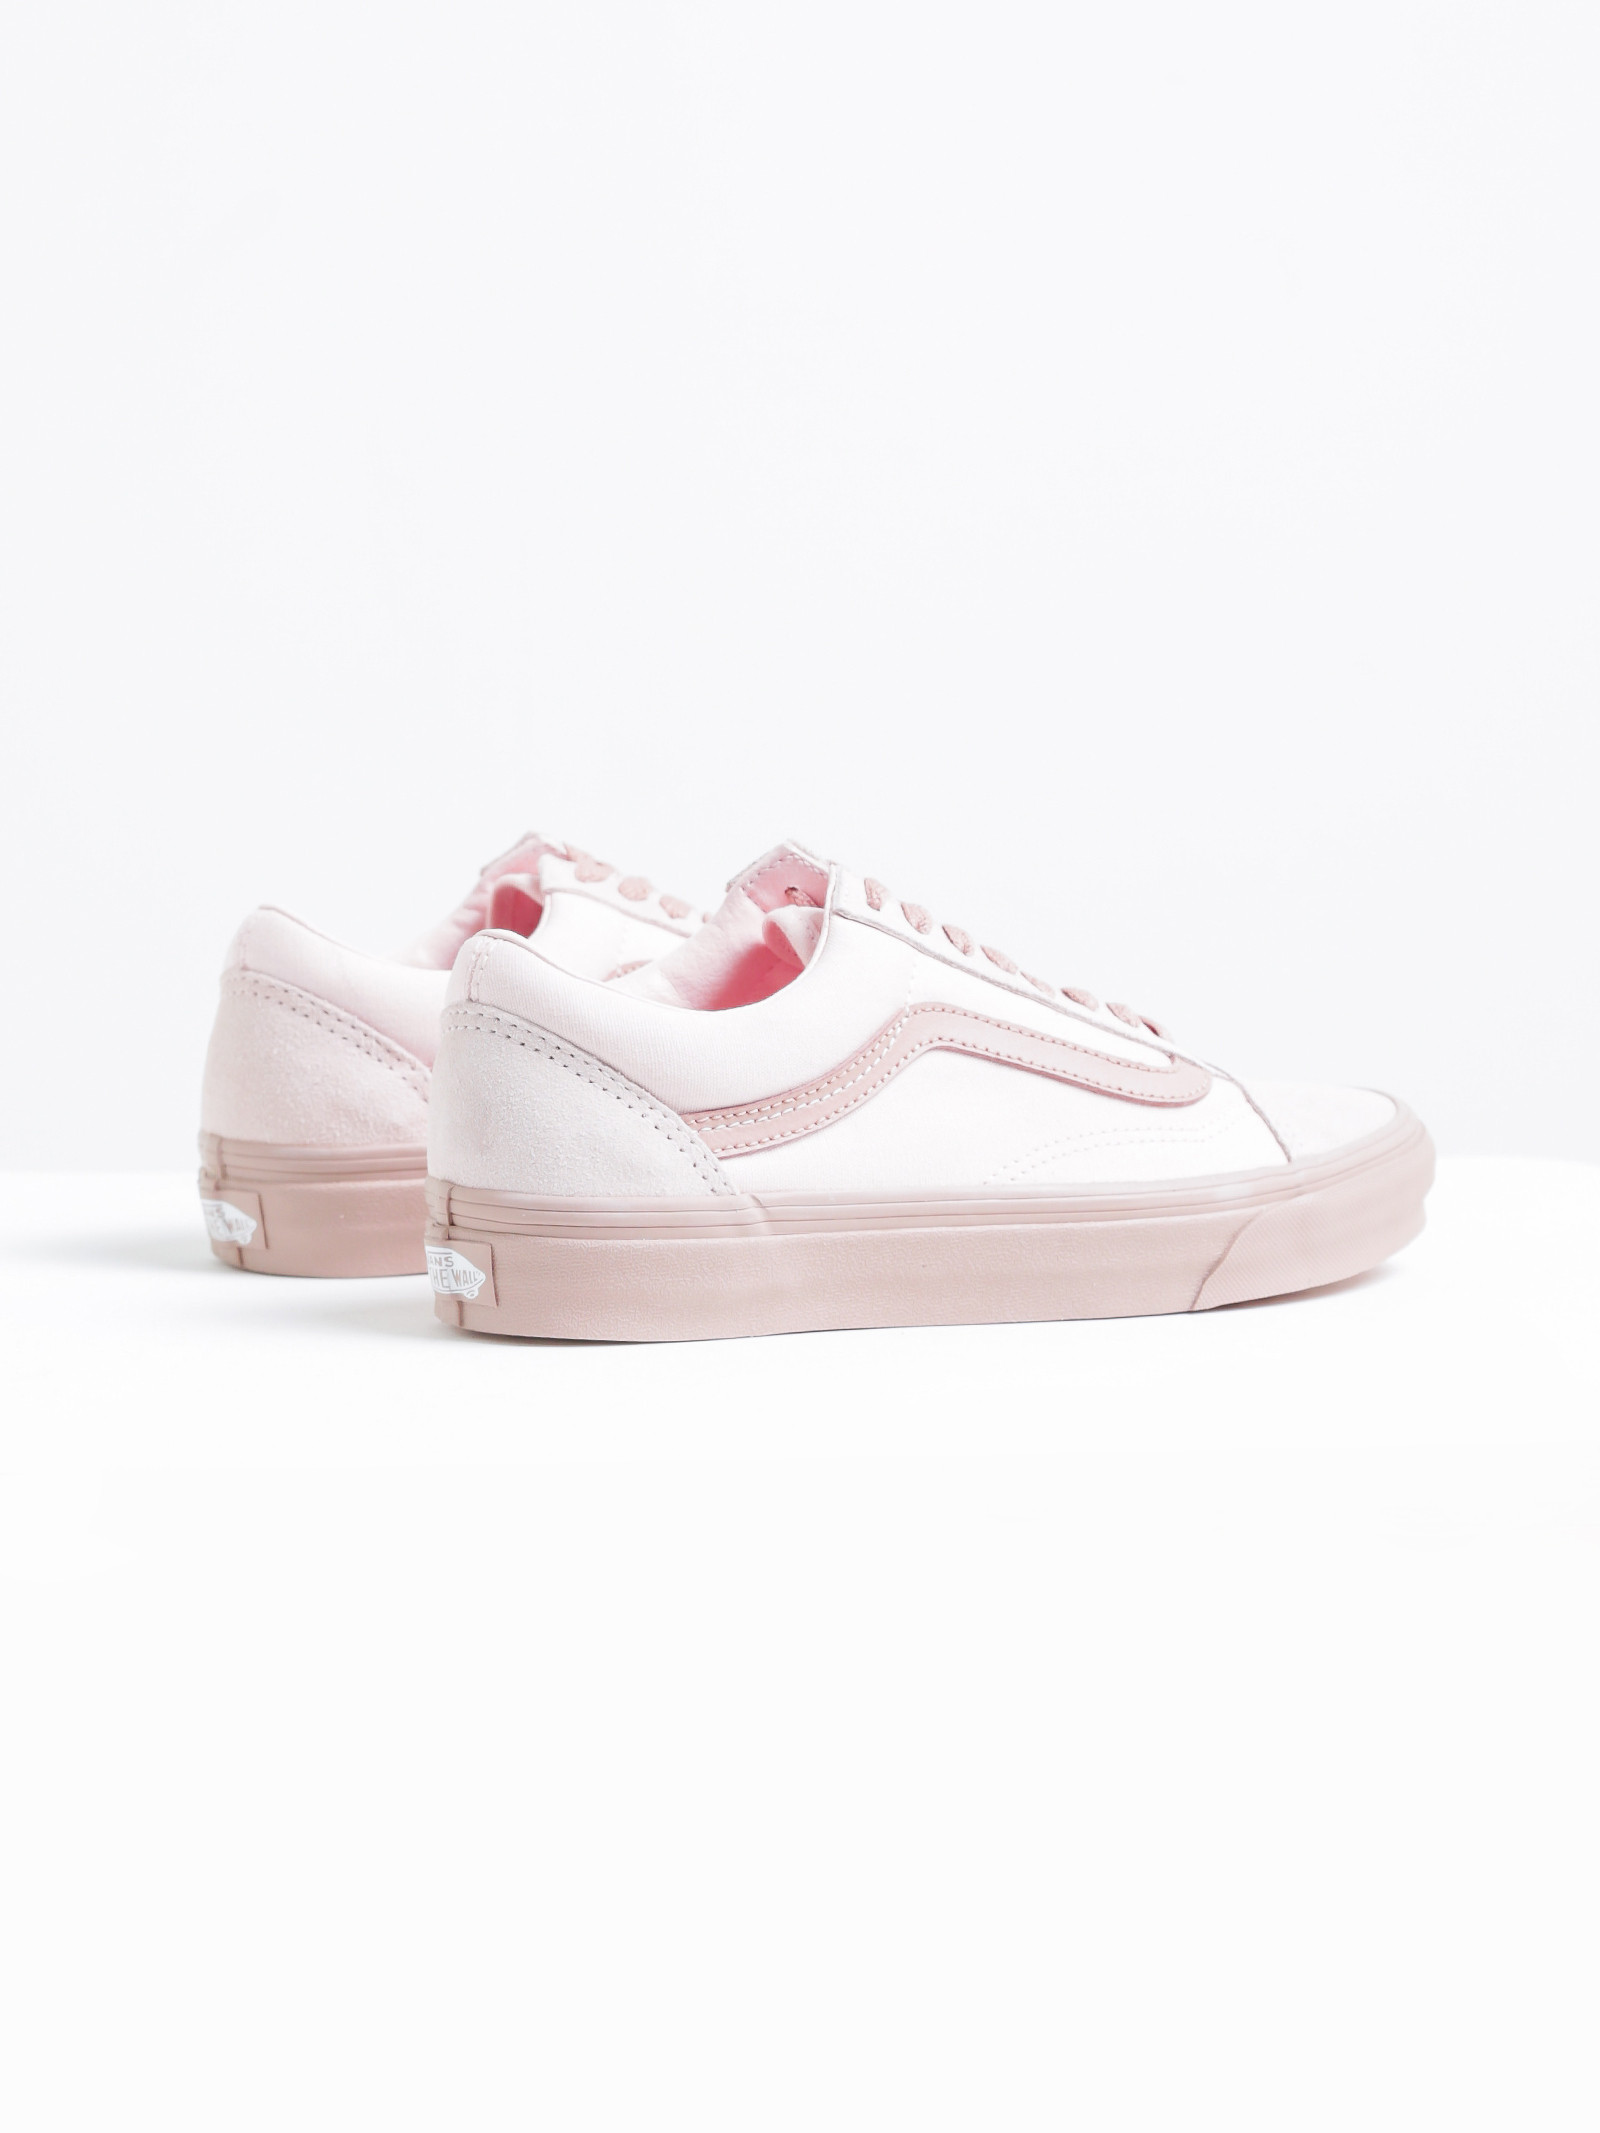 Vans Womens Old Skool 2-Tone Sneakers in Pale Pink